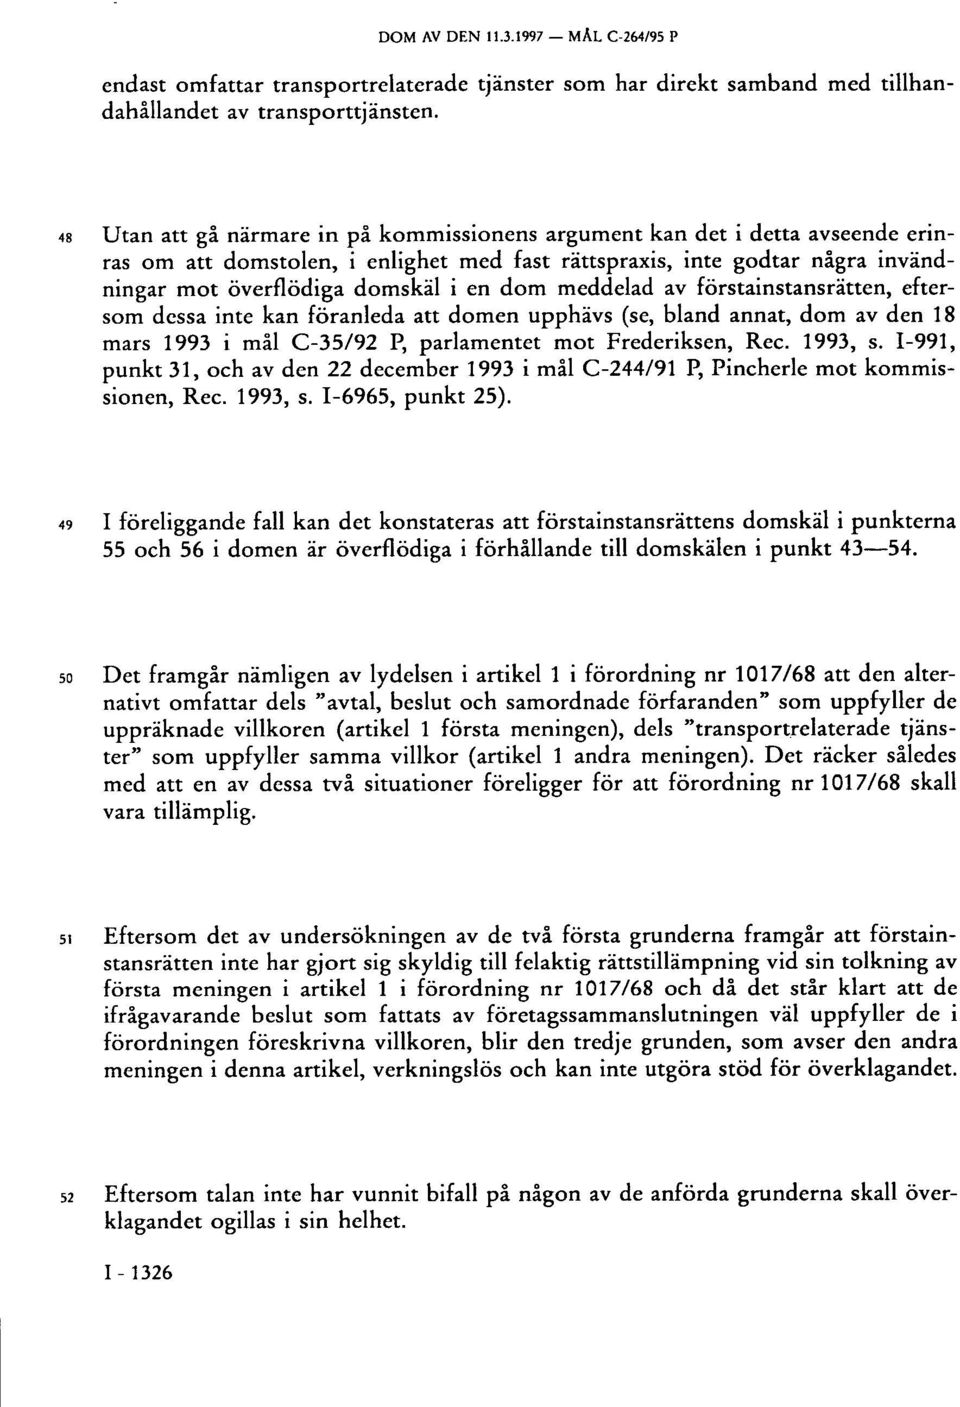 meddelad av förstainstansrätten, eftersom dessa inte kan föranleda att domen upphävs (se, bland annat, dom av den 18 mars 1993 i mål C-35/92 P, parlamentet mot Frederiksen, Rec. 1993, s.